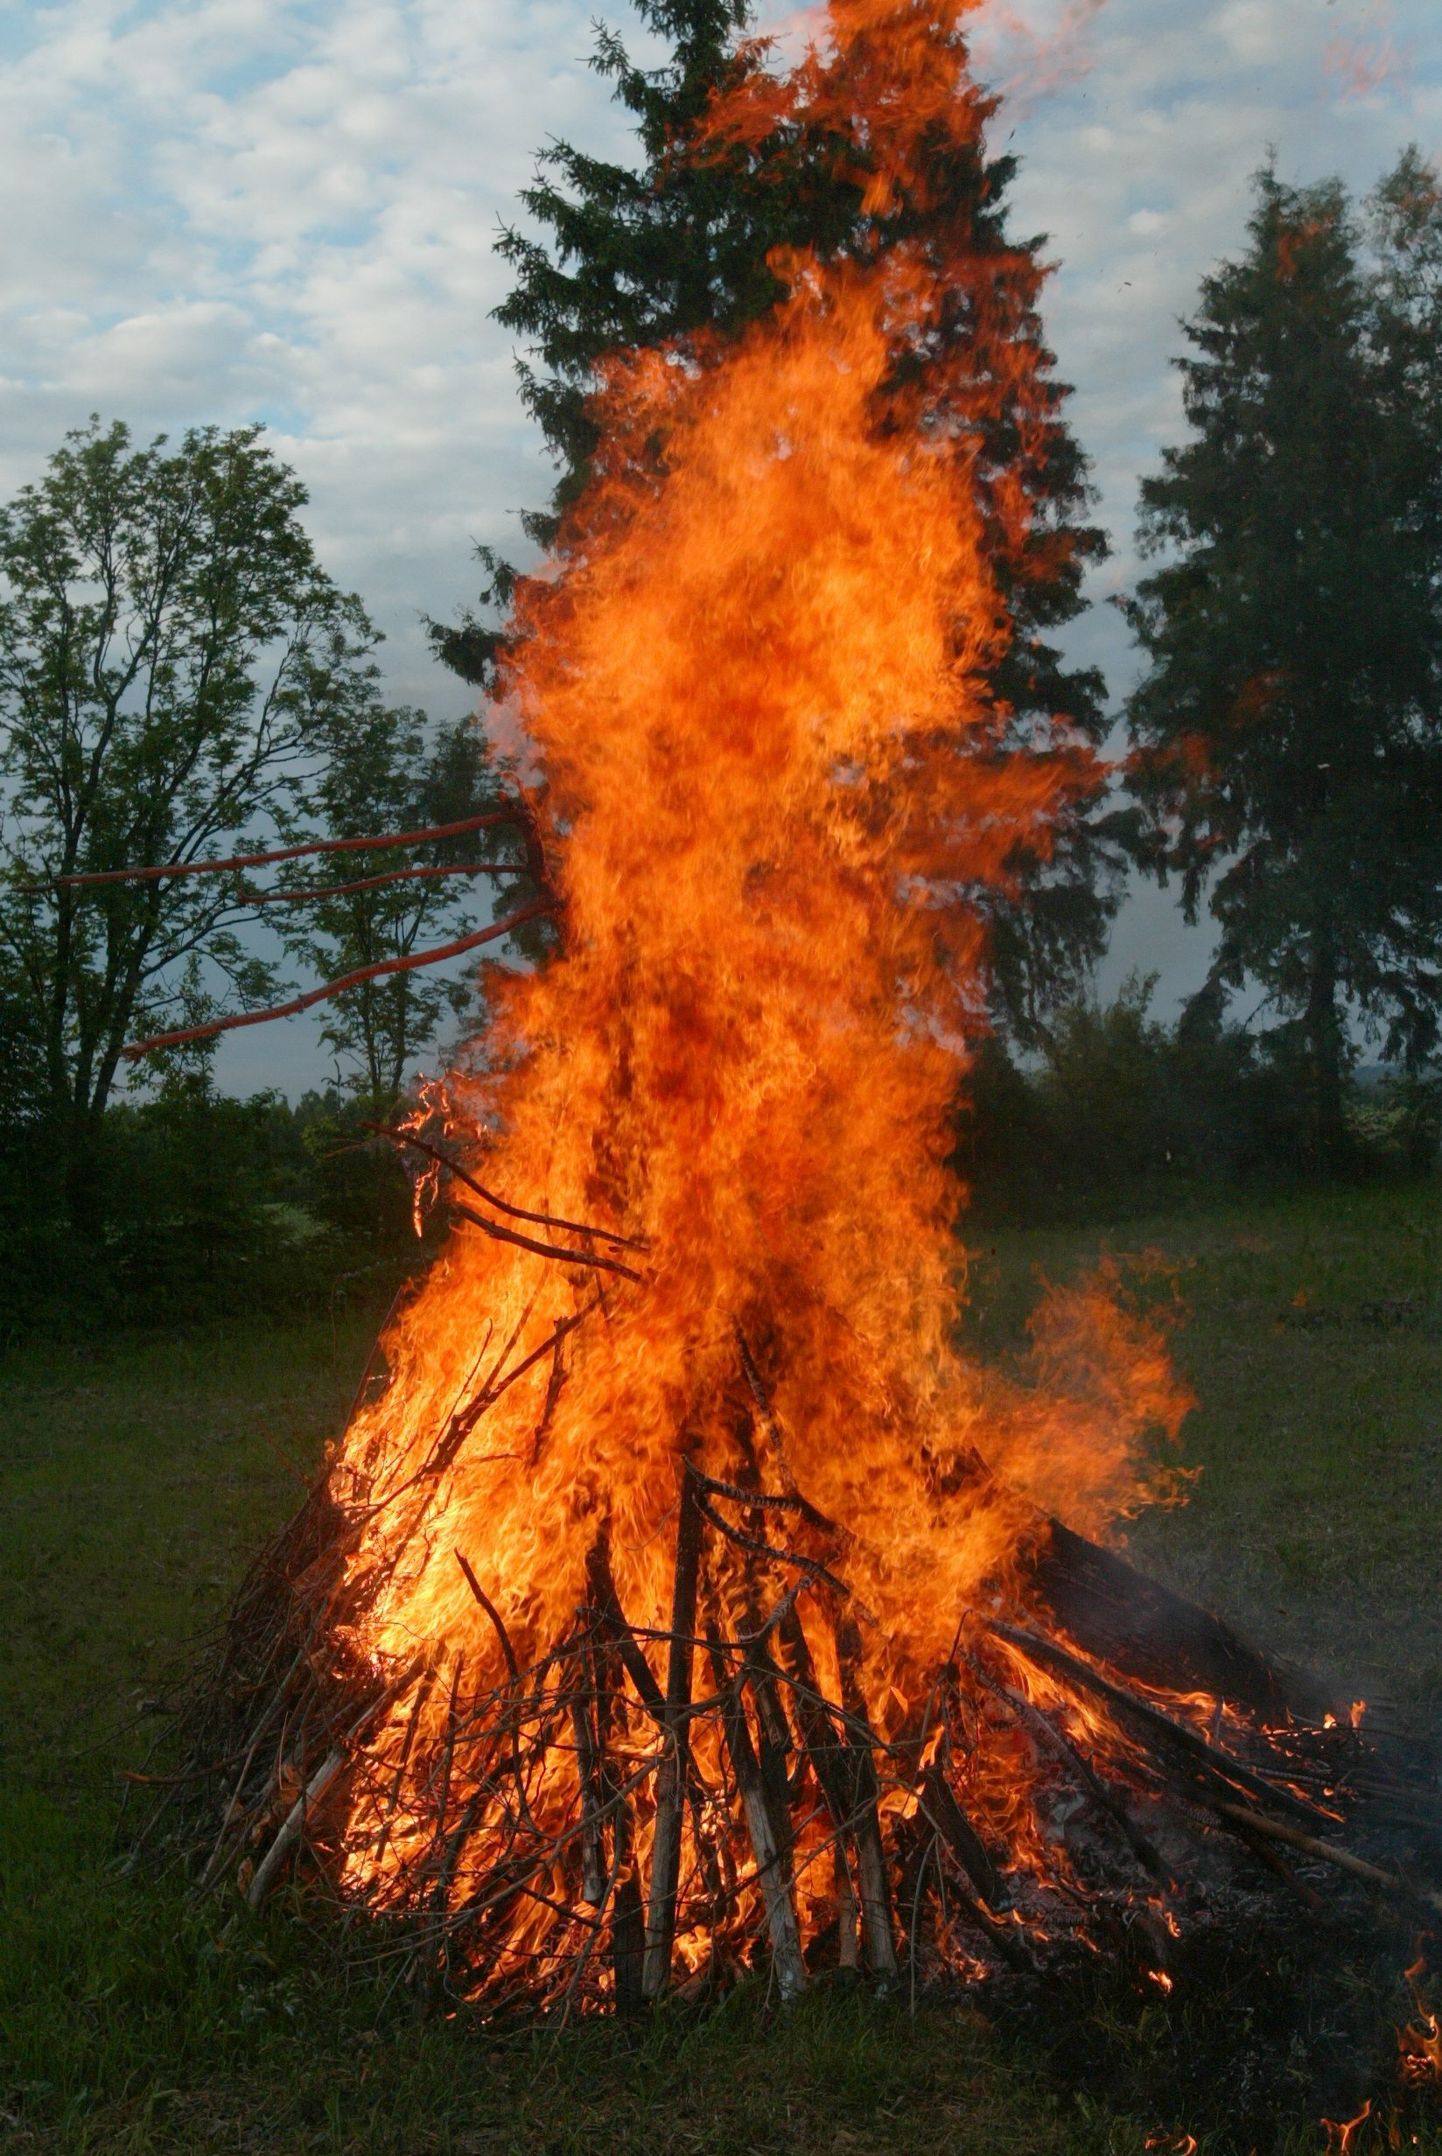 Lõkkematerjali kuhjas võib olla siilipesa. Lõkkeräsi enne süütamist ümber tõstes võib pääsata sadu siile tulesurmast.